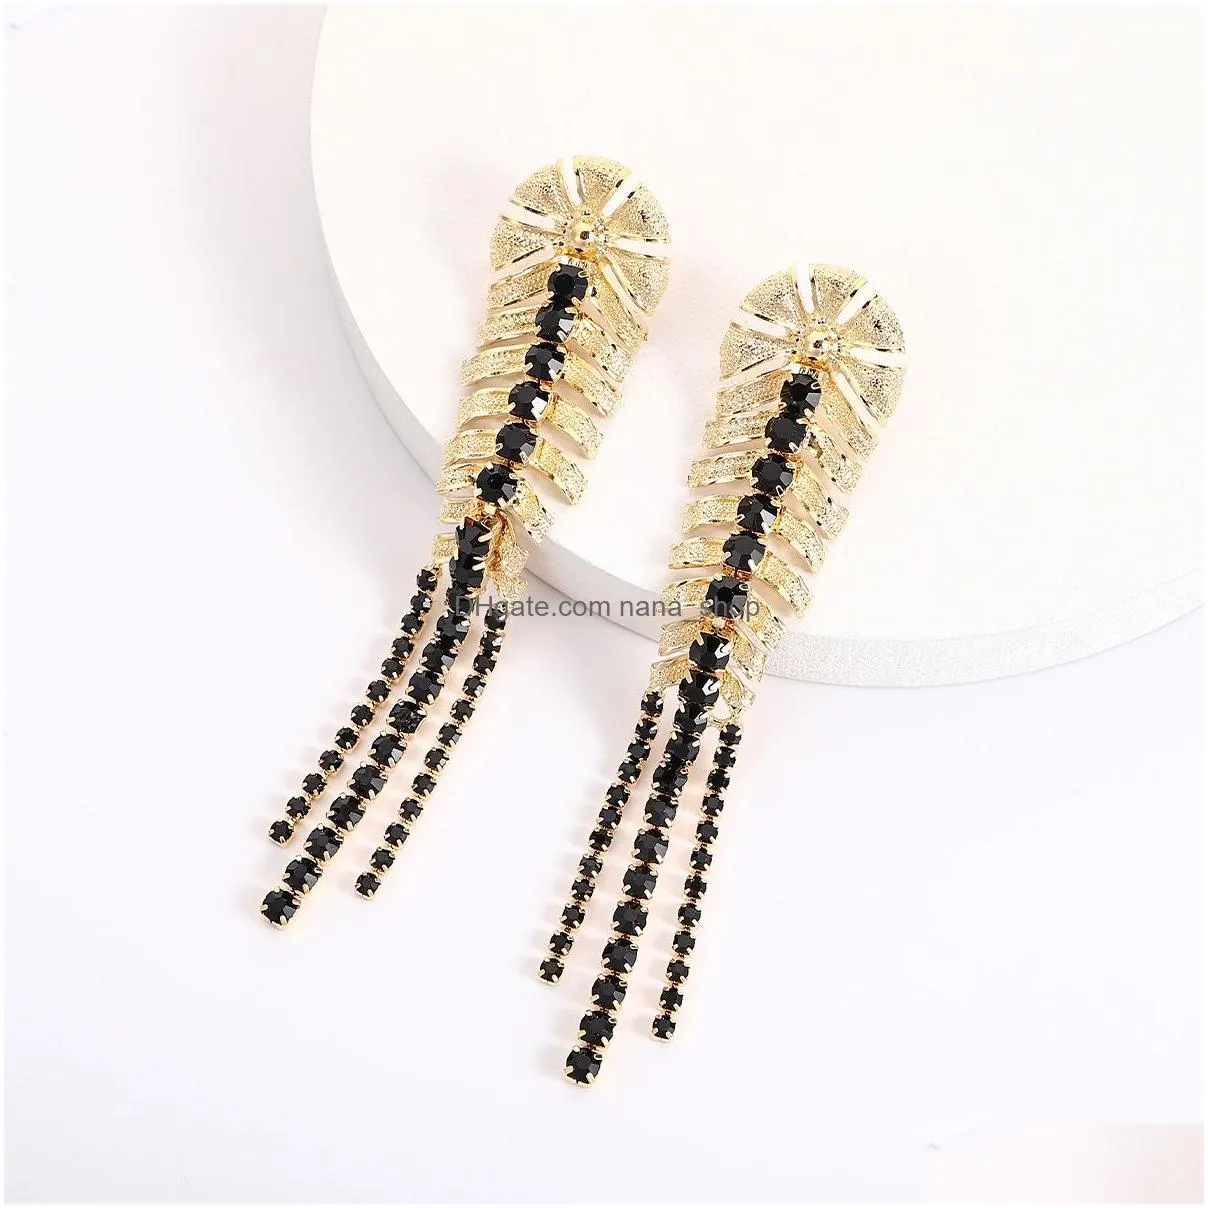 vintage golden long leaf tassel dangle earrings for woman bohemian bright feather shaped metal earrings fashion jewelry